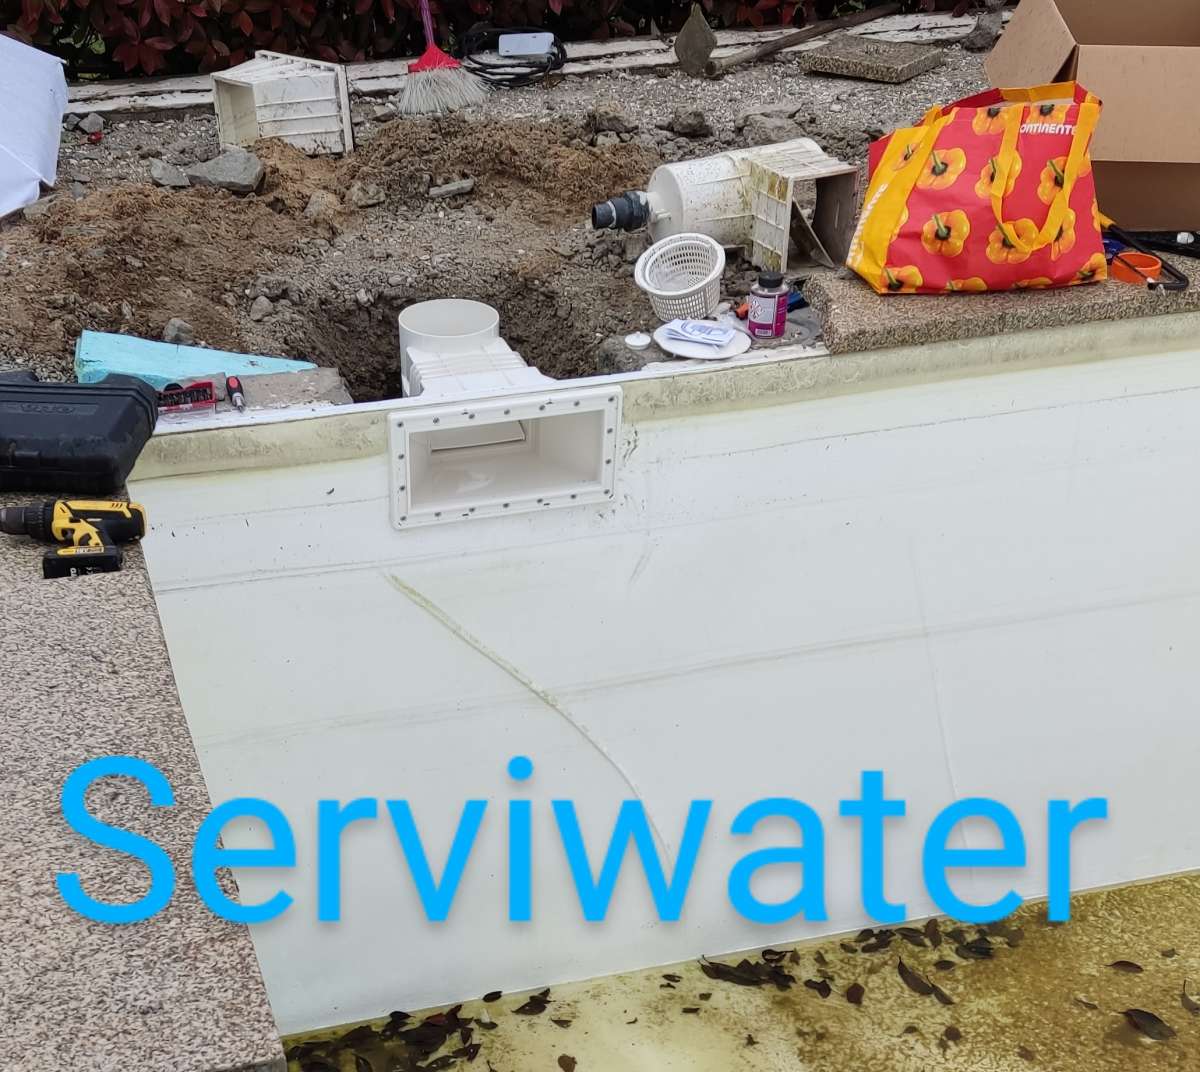 Serviwater - Póvoa de Varzim - Construção de Piscina Abaixo do Solo